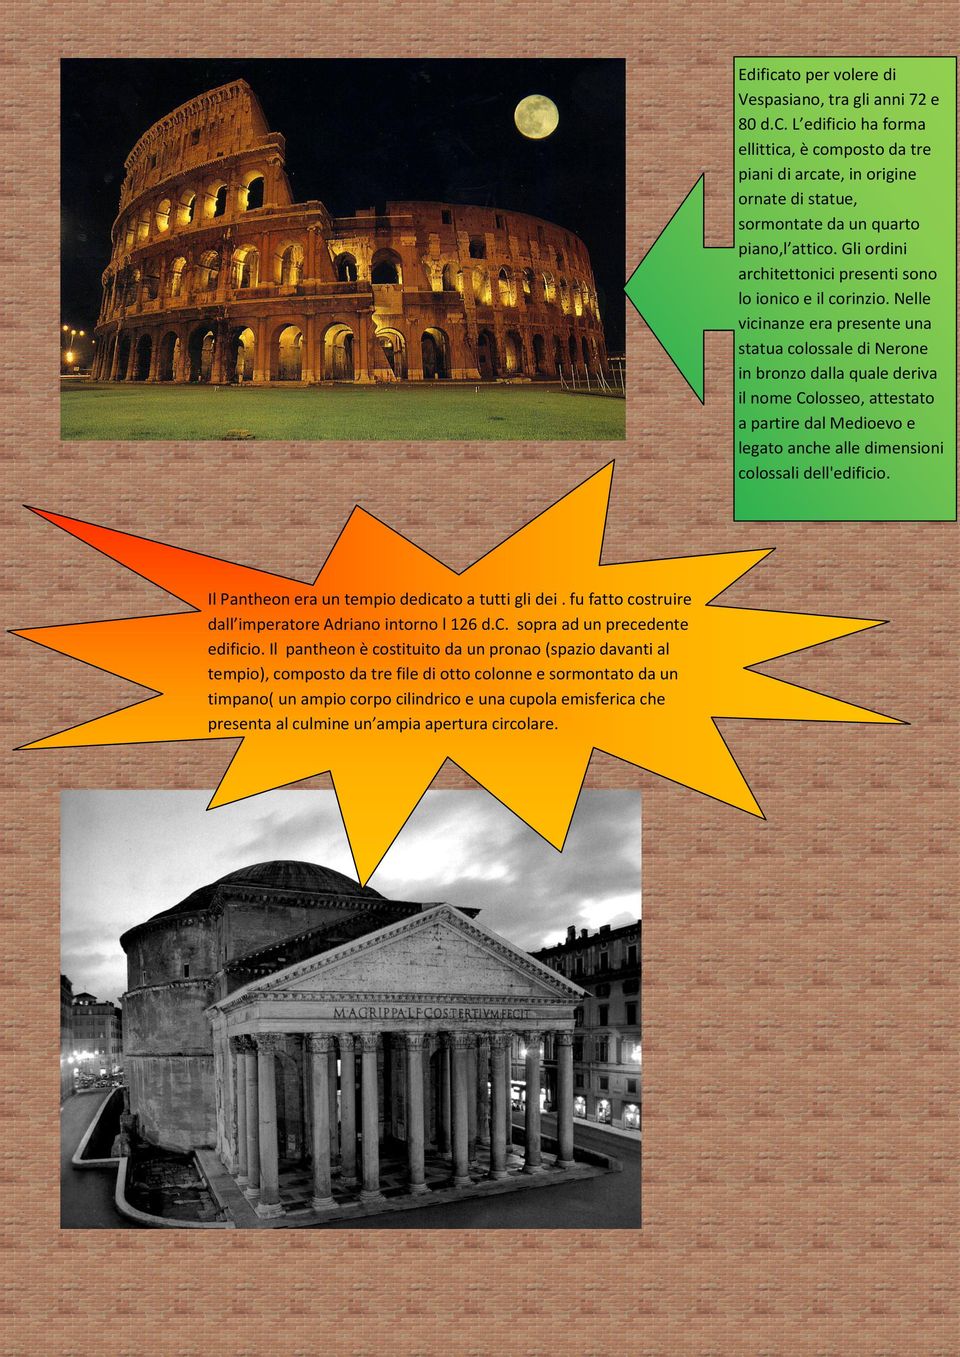 culmine un ampia apertura circolare. Edificato per volere di Vespasiano, tra gli anni 72 e 80 d.c. L edificio ha forma ellittica, è composto da tre piani di arcate, in origine ornate di statue, sormontate da un quarto piano,l attico.